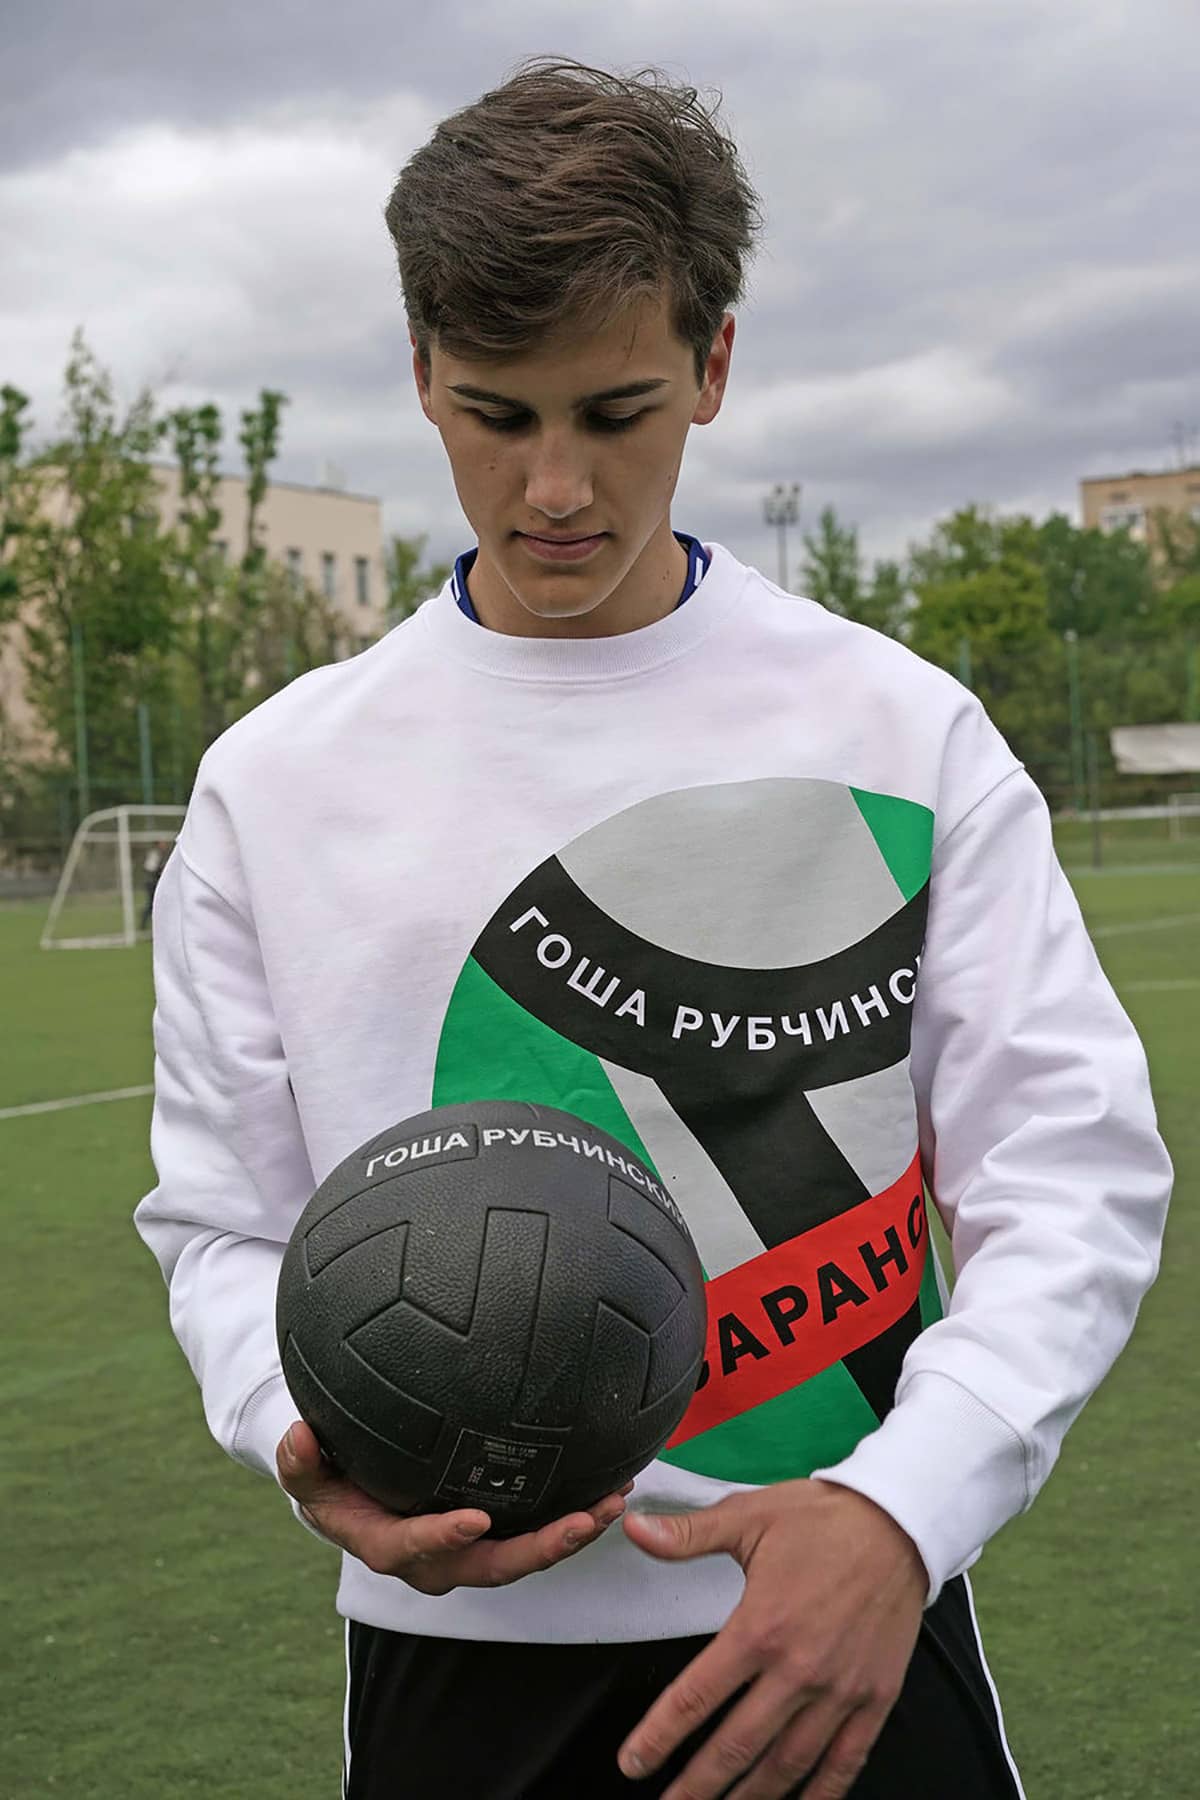 Gosha Rubchinskiy x adidas 2018 FIFA World Cup Collection Look - 6